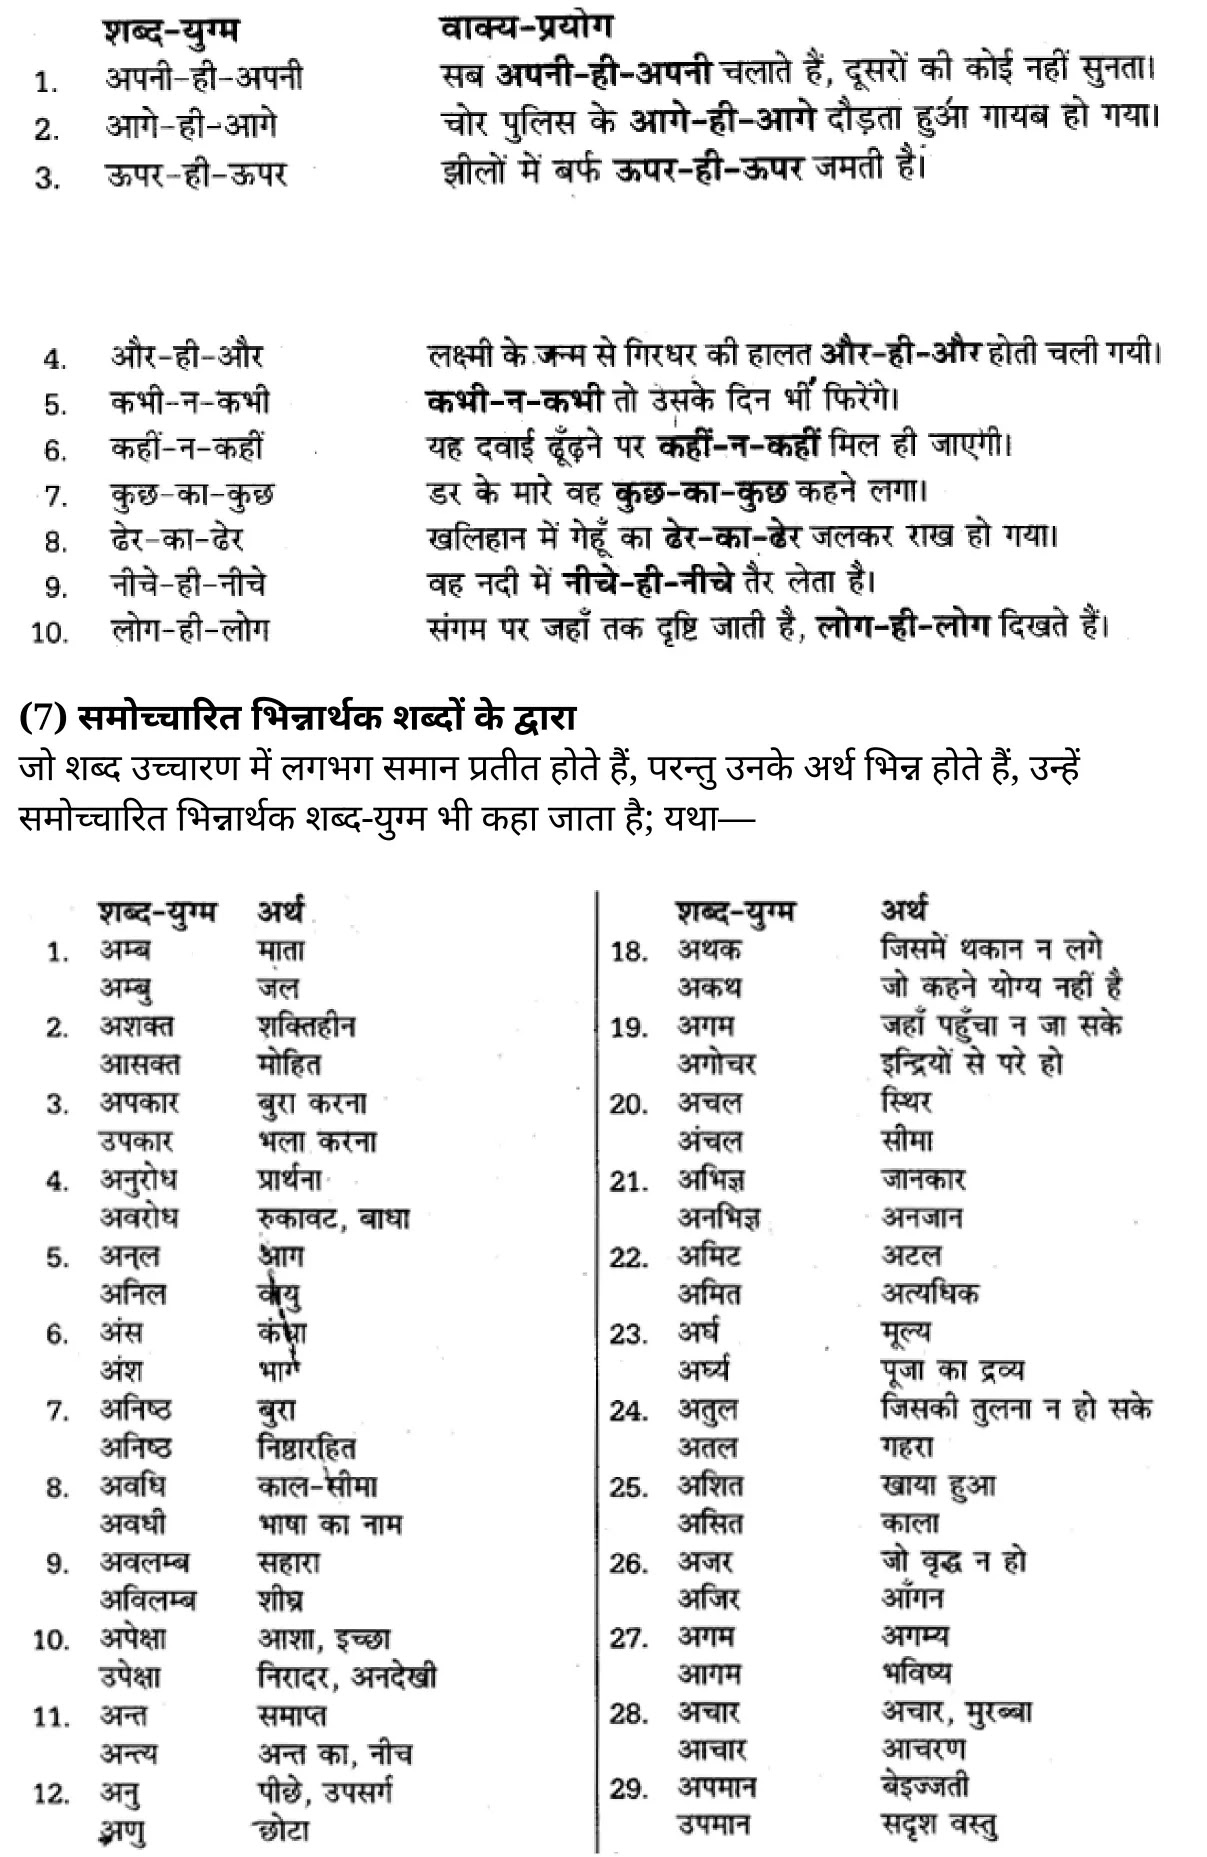 यूपी बोर्ड एनसीईआरटी समाधान "कक्षा 11 सामान्य  हिंदी" शब्दों में सूक्ष्म अन्तर  हिंदी में